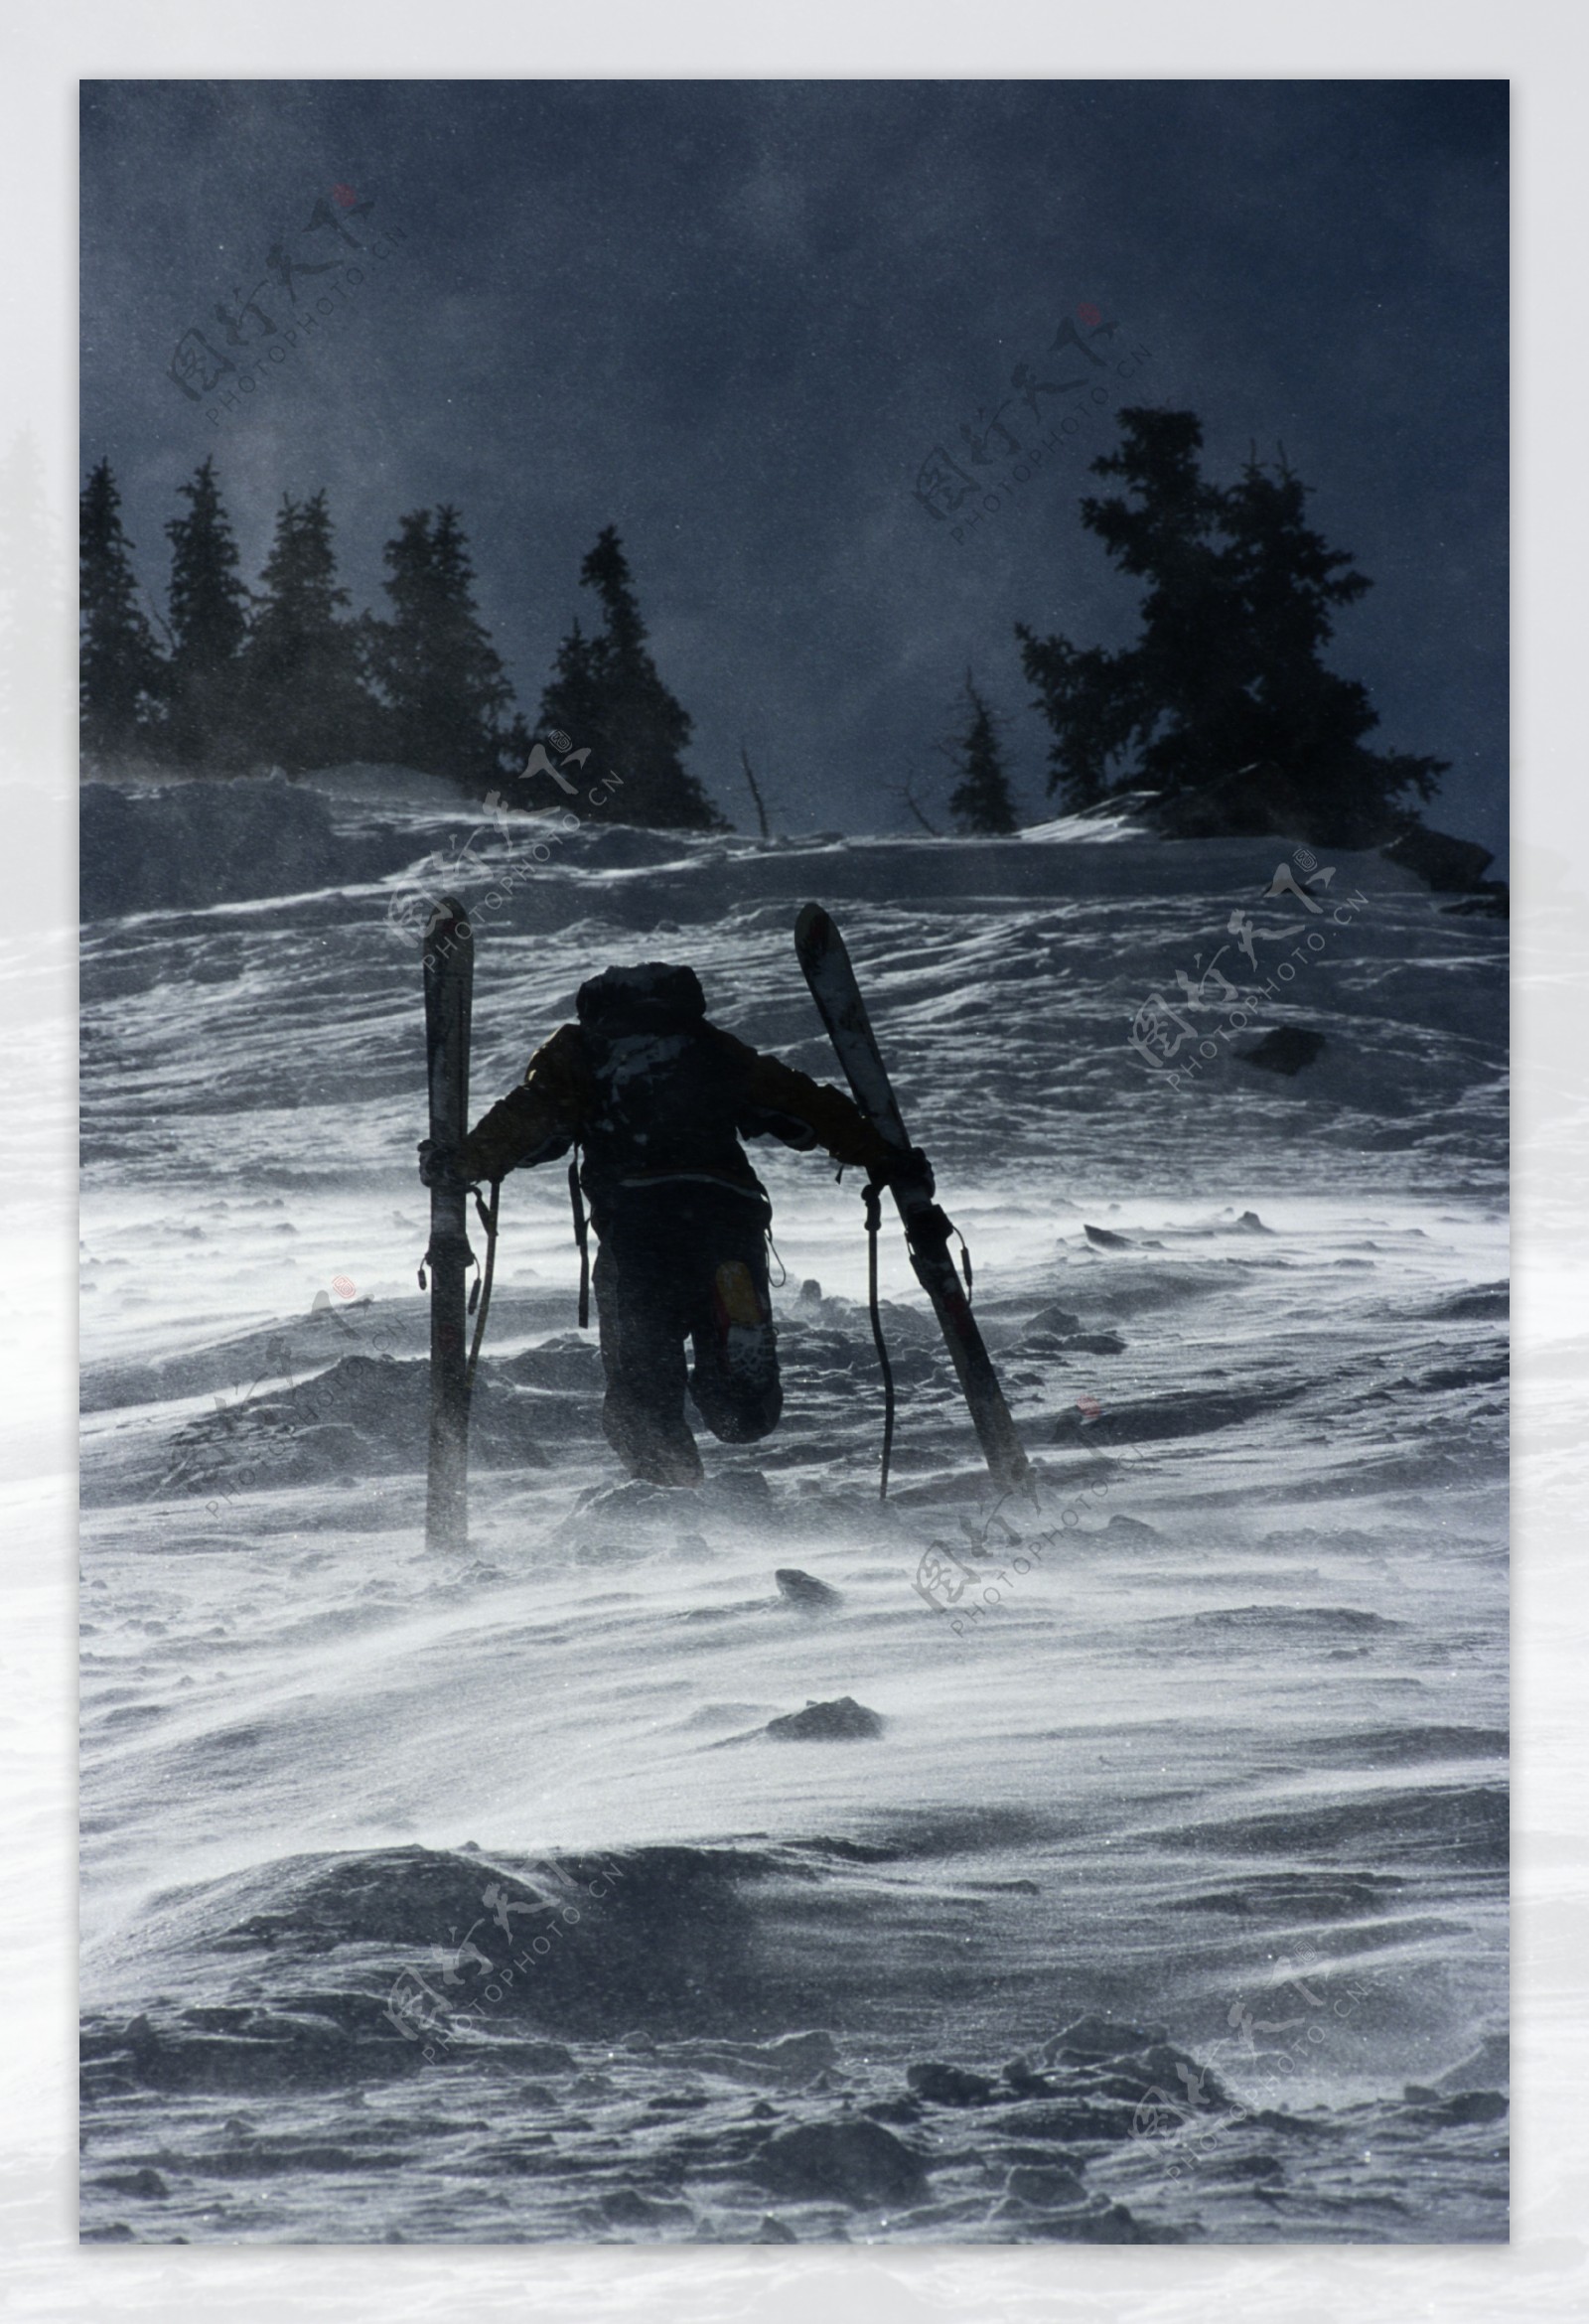 准备滑雪的人图片